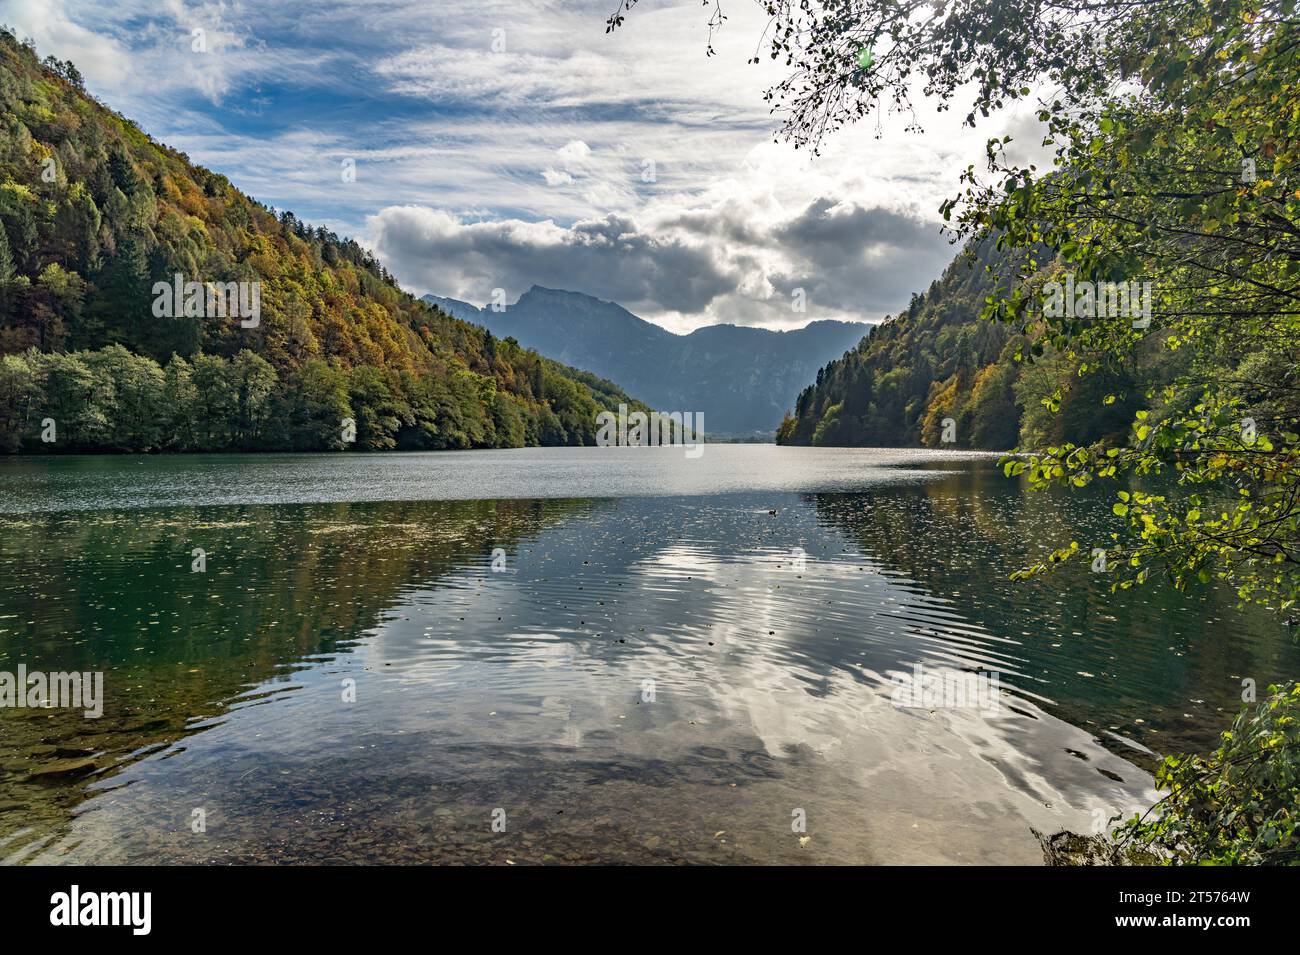 Der SEE Lago di Levico im Valsugana, Trentino, Italien, Europa | Lago di Levico in Valsugana, Trentino, Italia, Europa Foto Stock